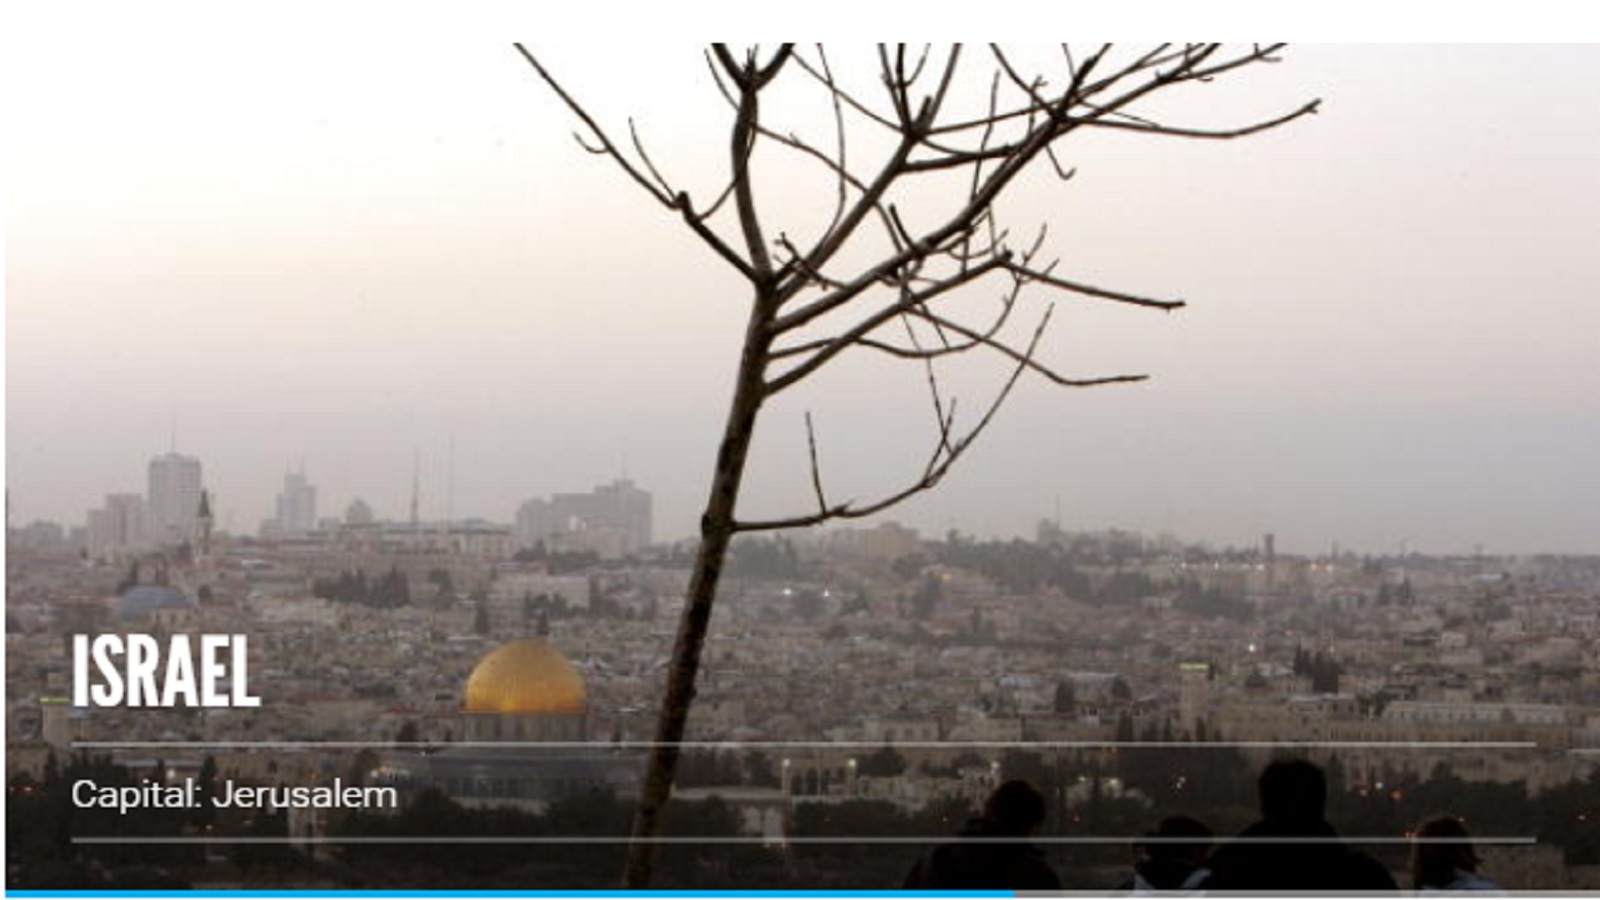 بريطانيا تمنع إعلاناً يصور القدس القديمة جزءاً من اسرائيل